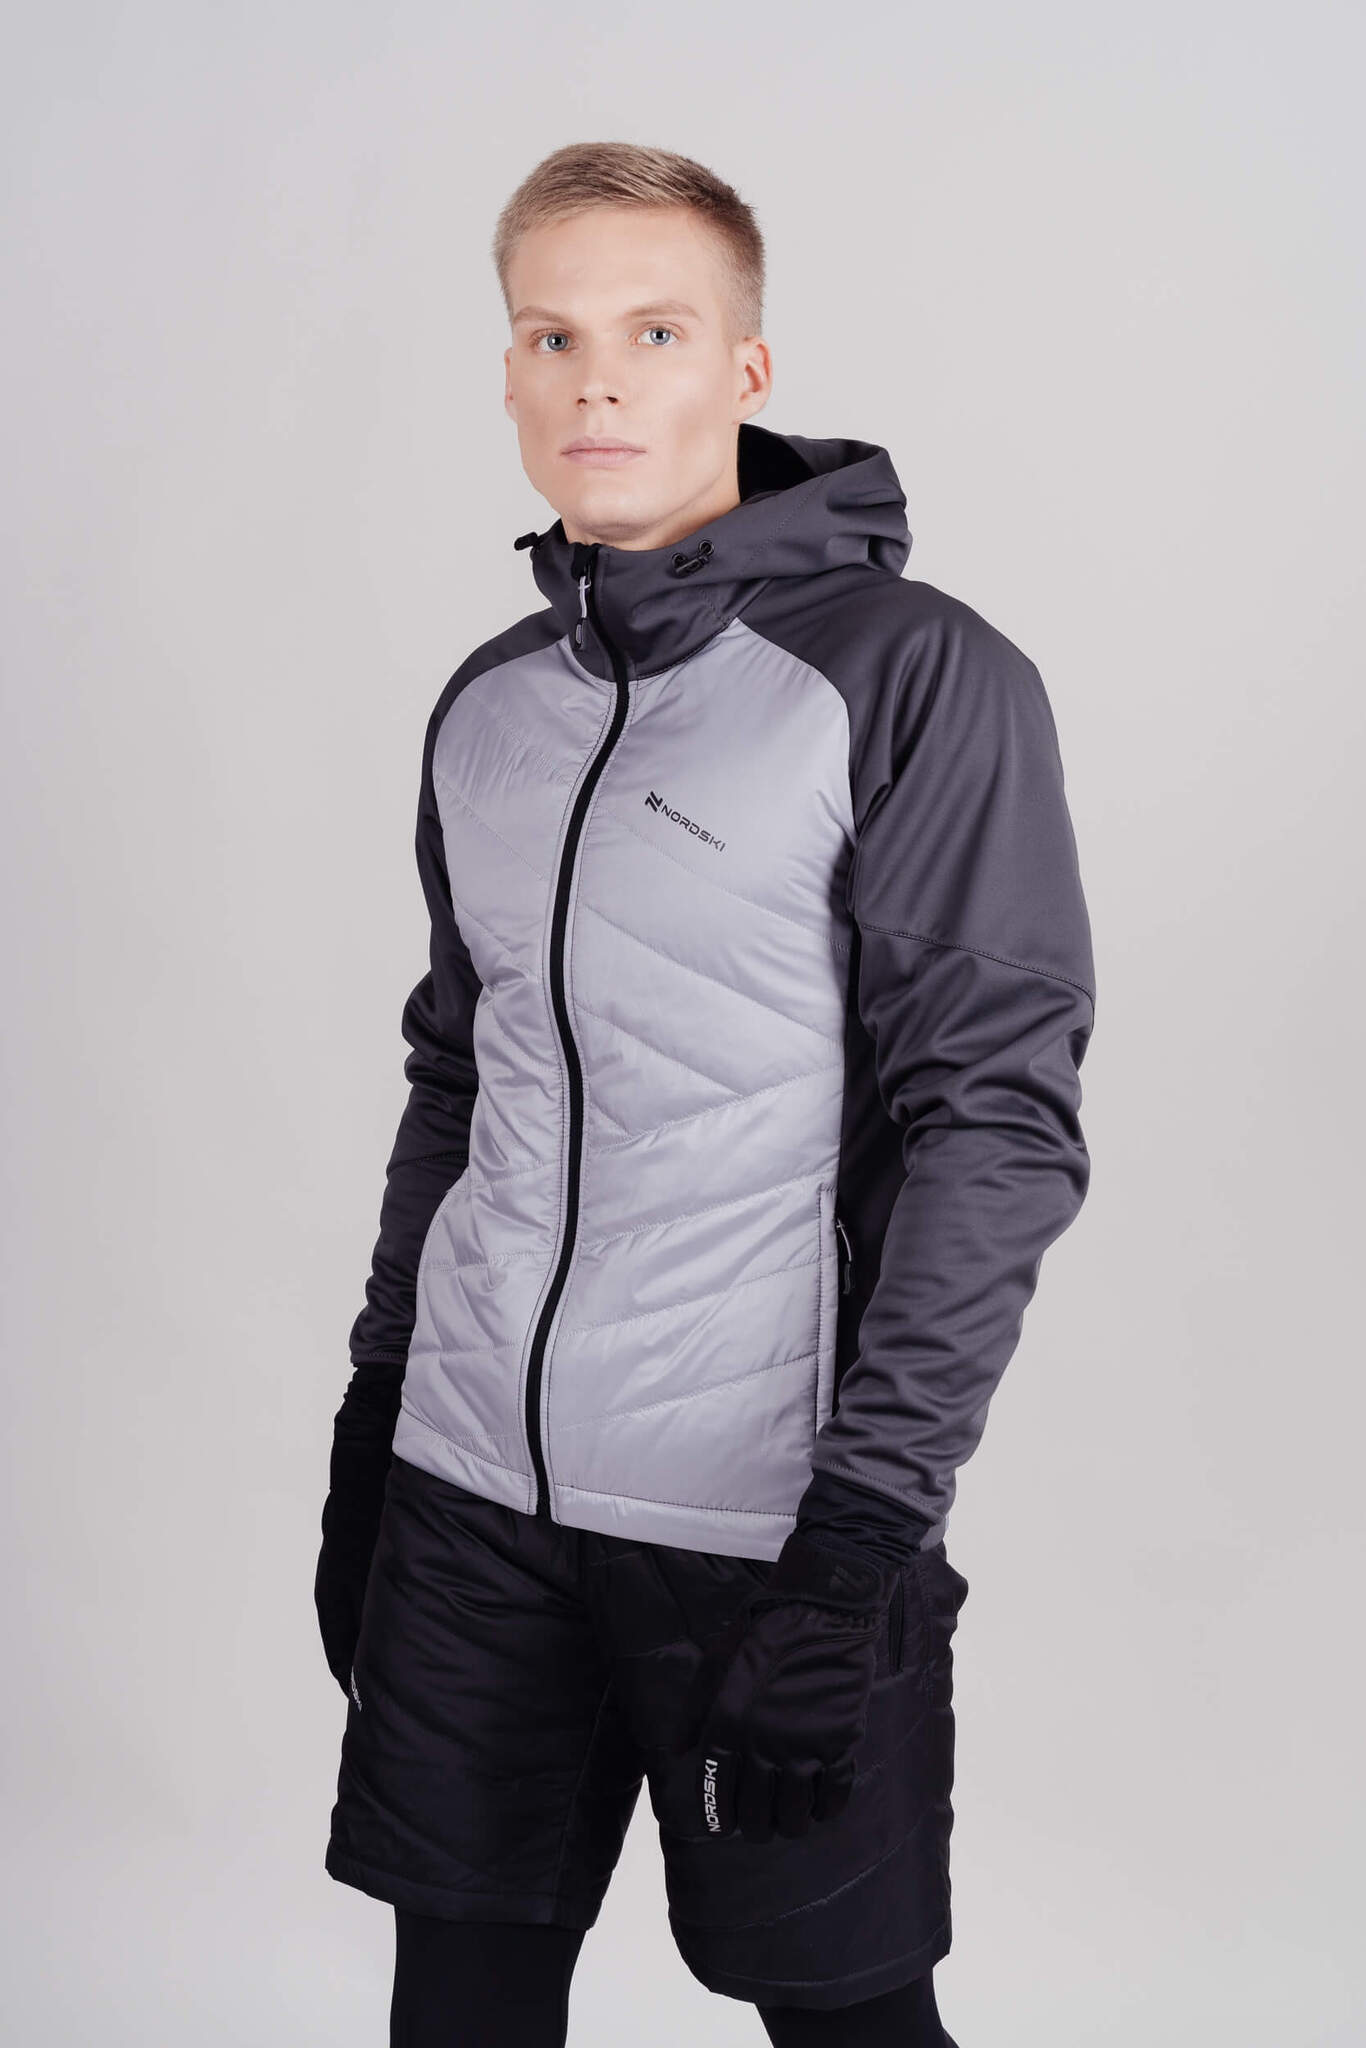 Мужская тренировочная куртка с капюшоном Nordski Hybrid серая |  Интернет-магазин Five-sport